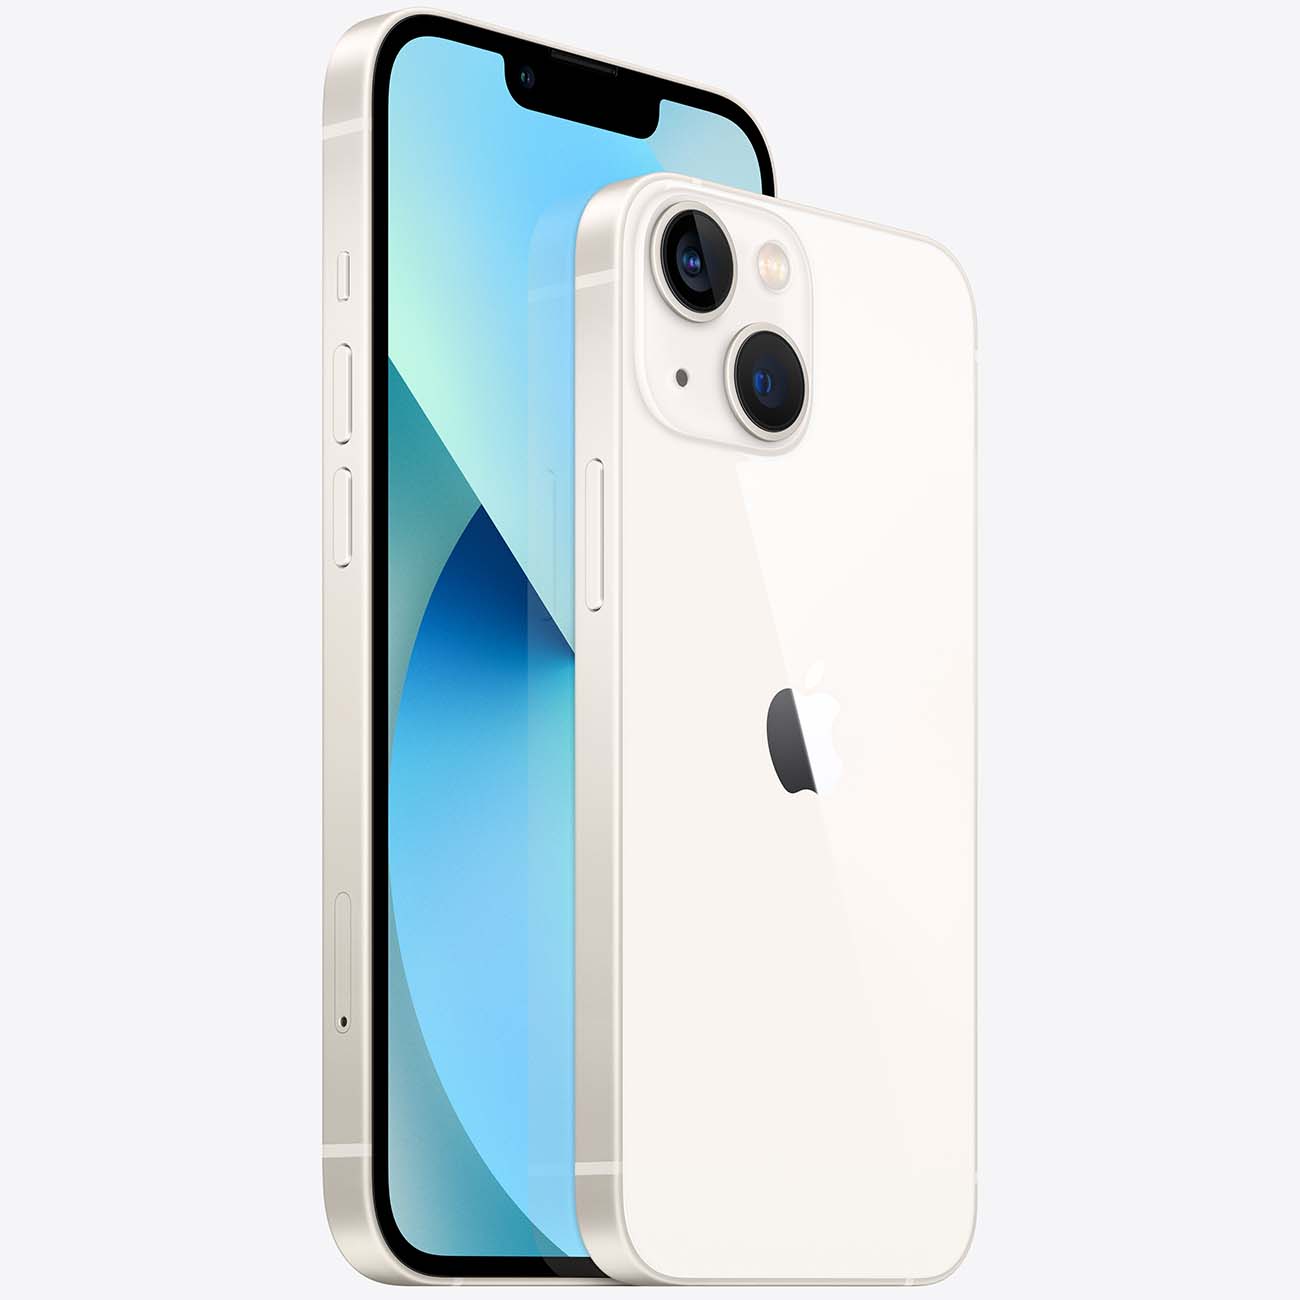 Купить смартфон apple iphone 13 256gb starlight Apple iPhone 13 в официальном магазине Apple, Samsung, Xiaomi. iPixel.ru Купить, заказ, кредит, рассрочка, отзывы,  характеристики, цена,  фотографии, в подарок.